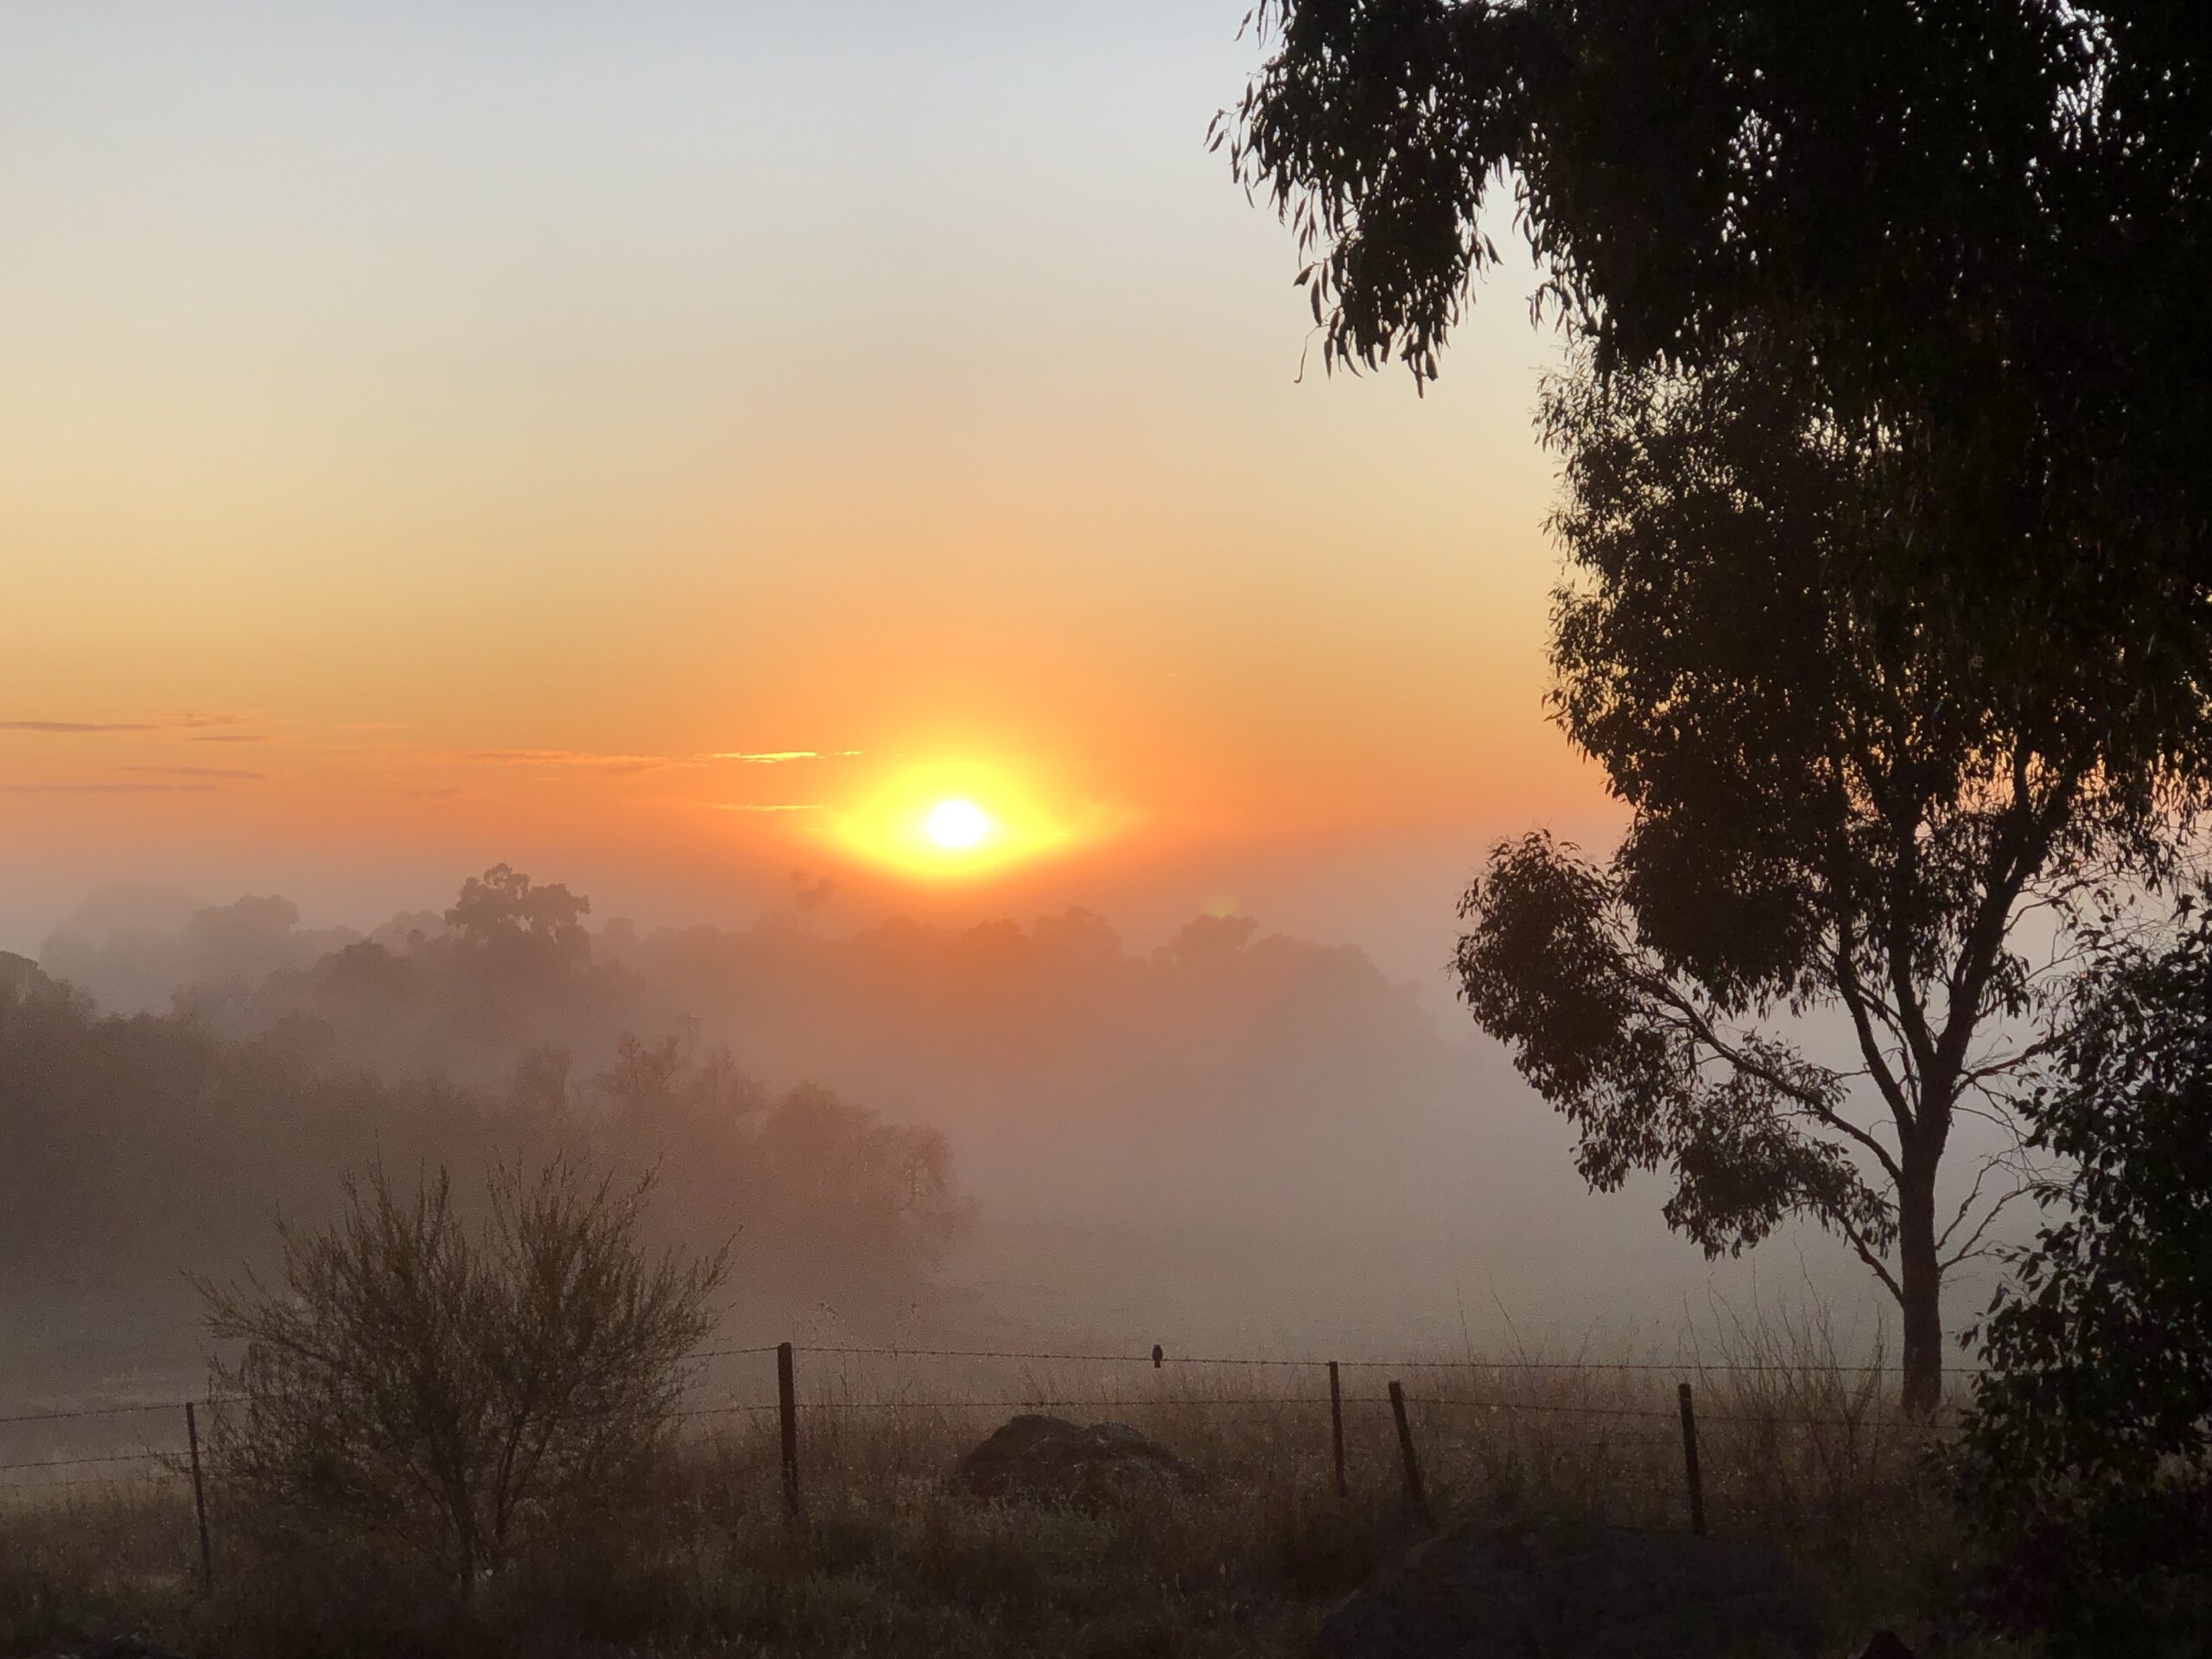 Winter morning in Cosgrove, Victoria, Australia.